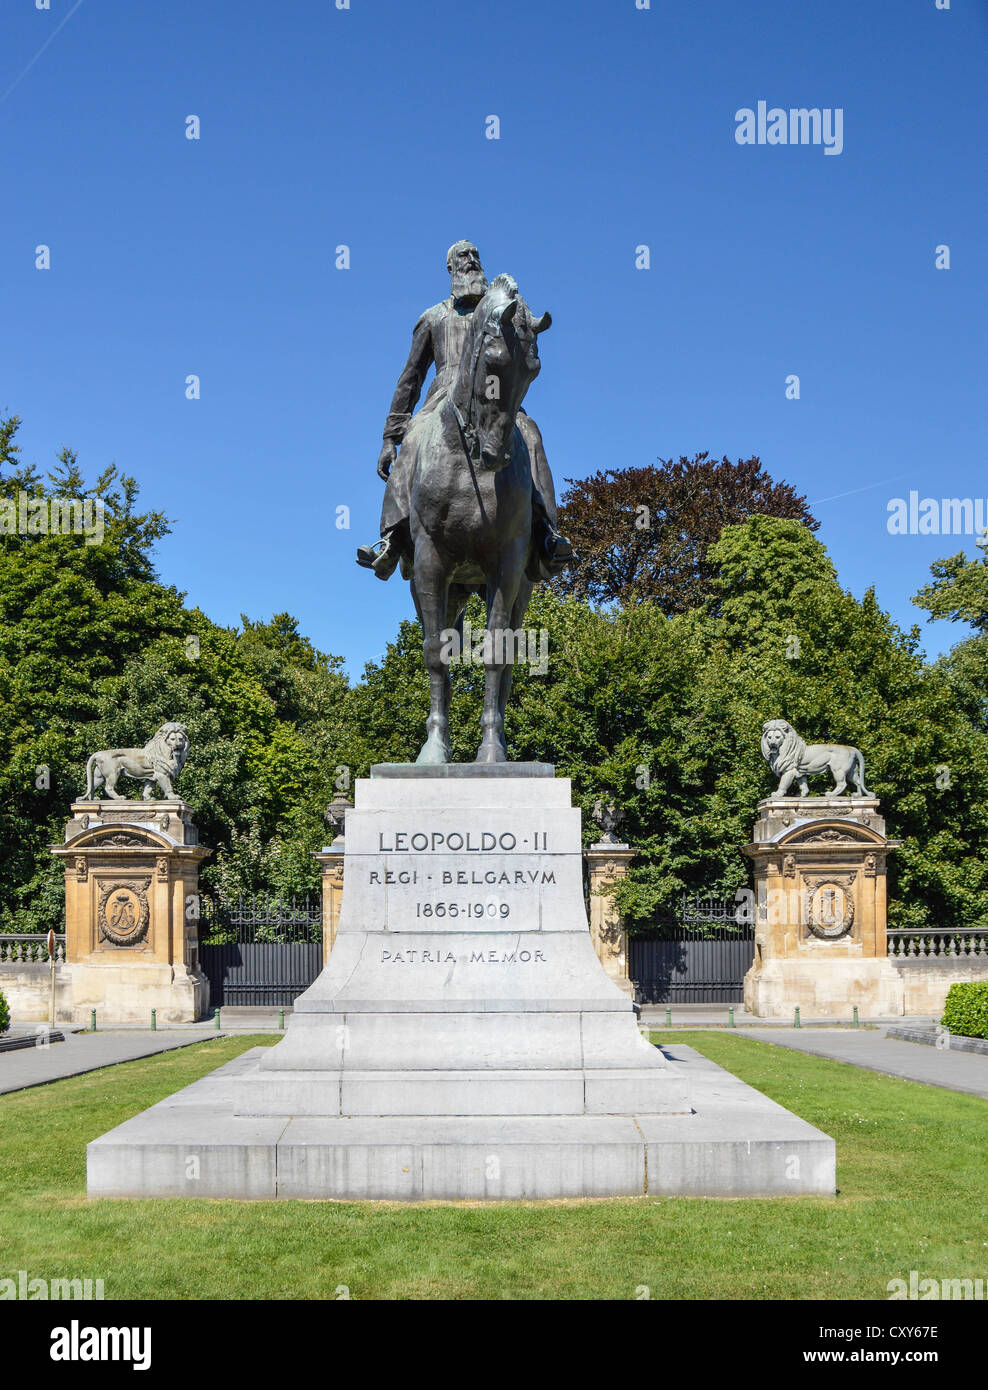 Statua di Leopoldo II al di fuori del Parco del palazzo, Bruxelles, Belgio, Europa, Unione Europea, con Lion statua cancelli in background Foto Stock